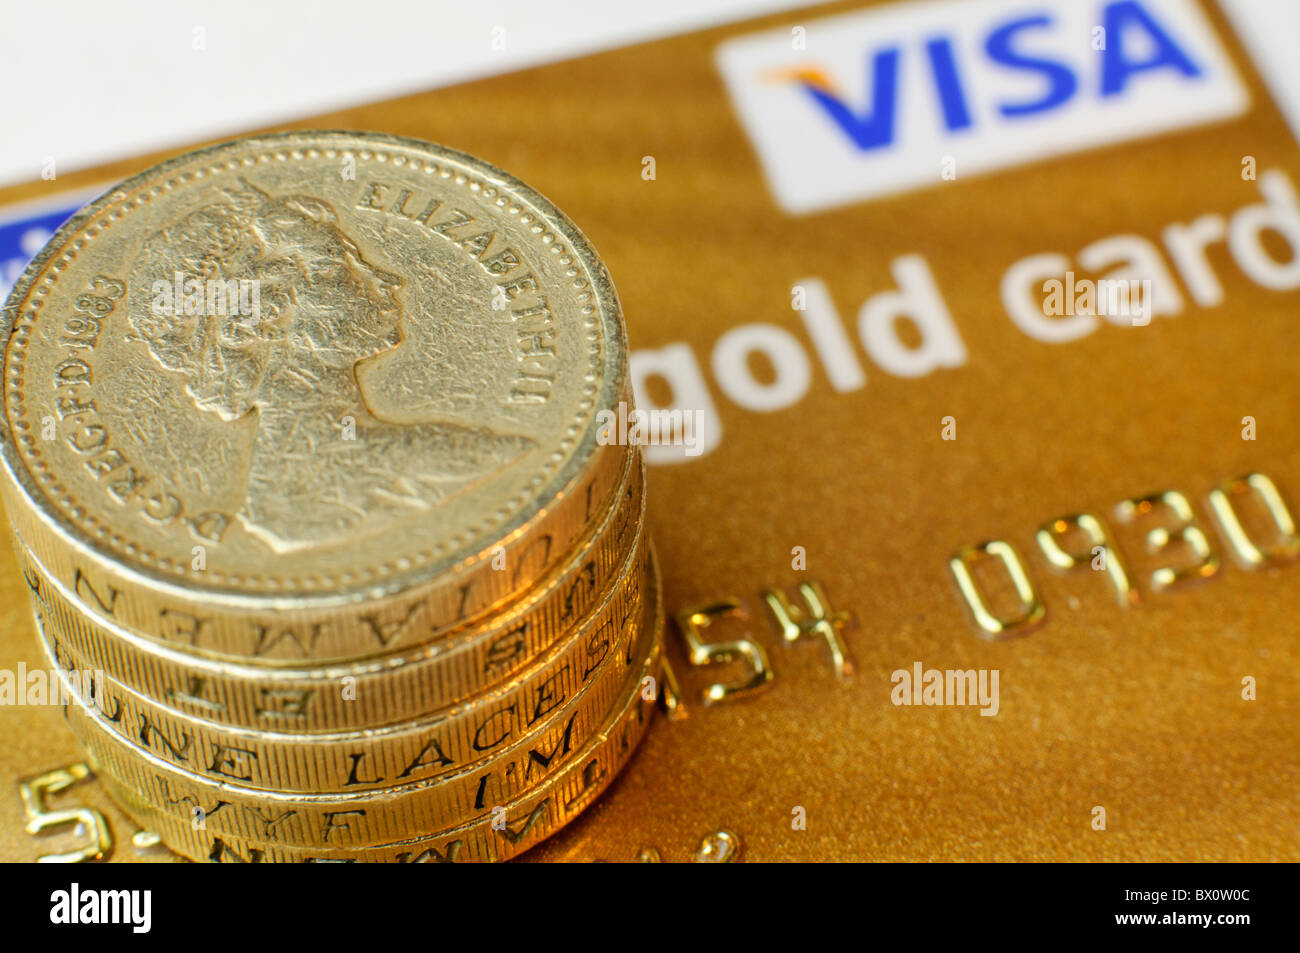 Visa gold card immagini e fotografie stock ad alta risoluzione - Alamy